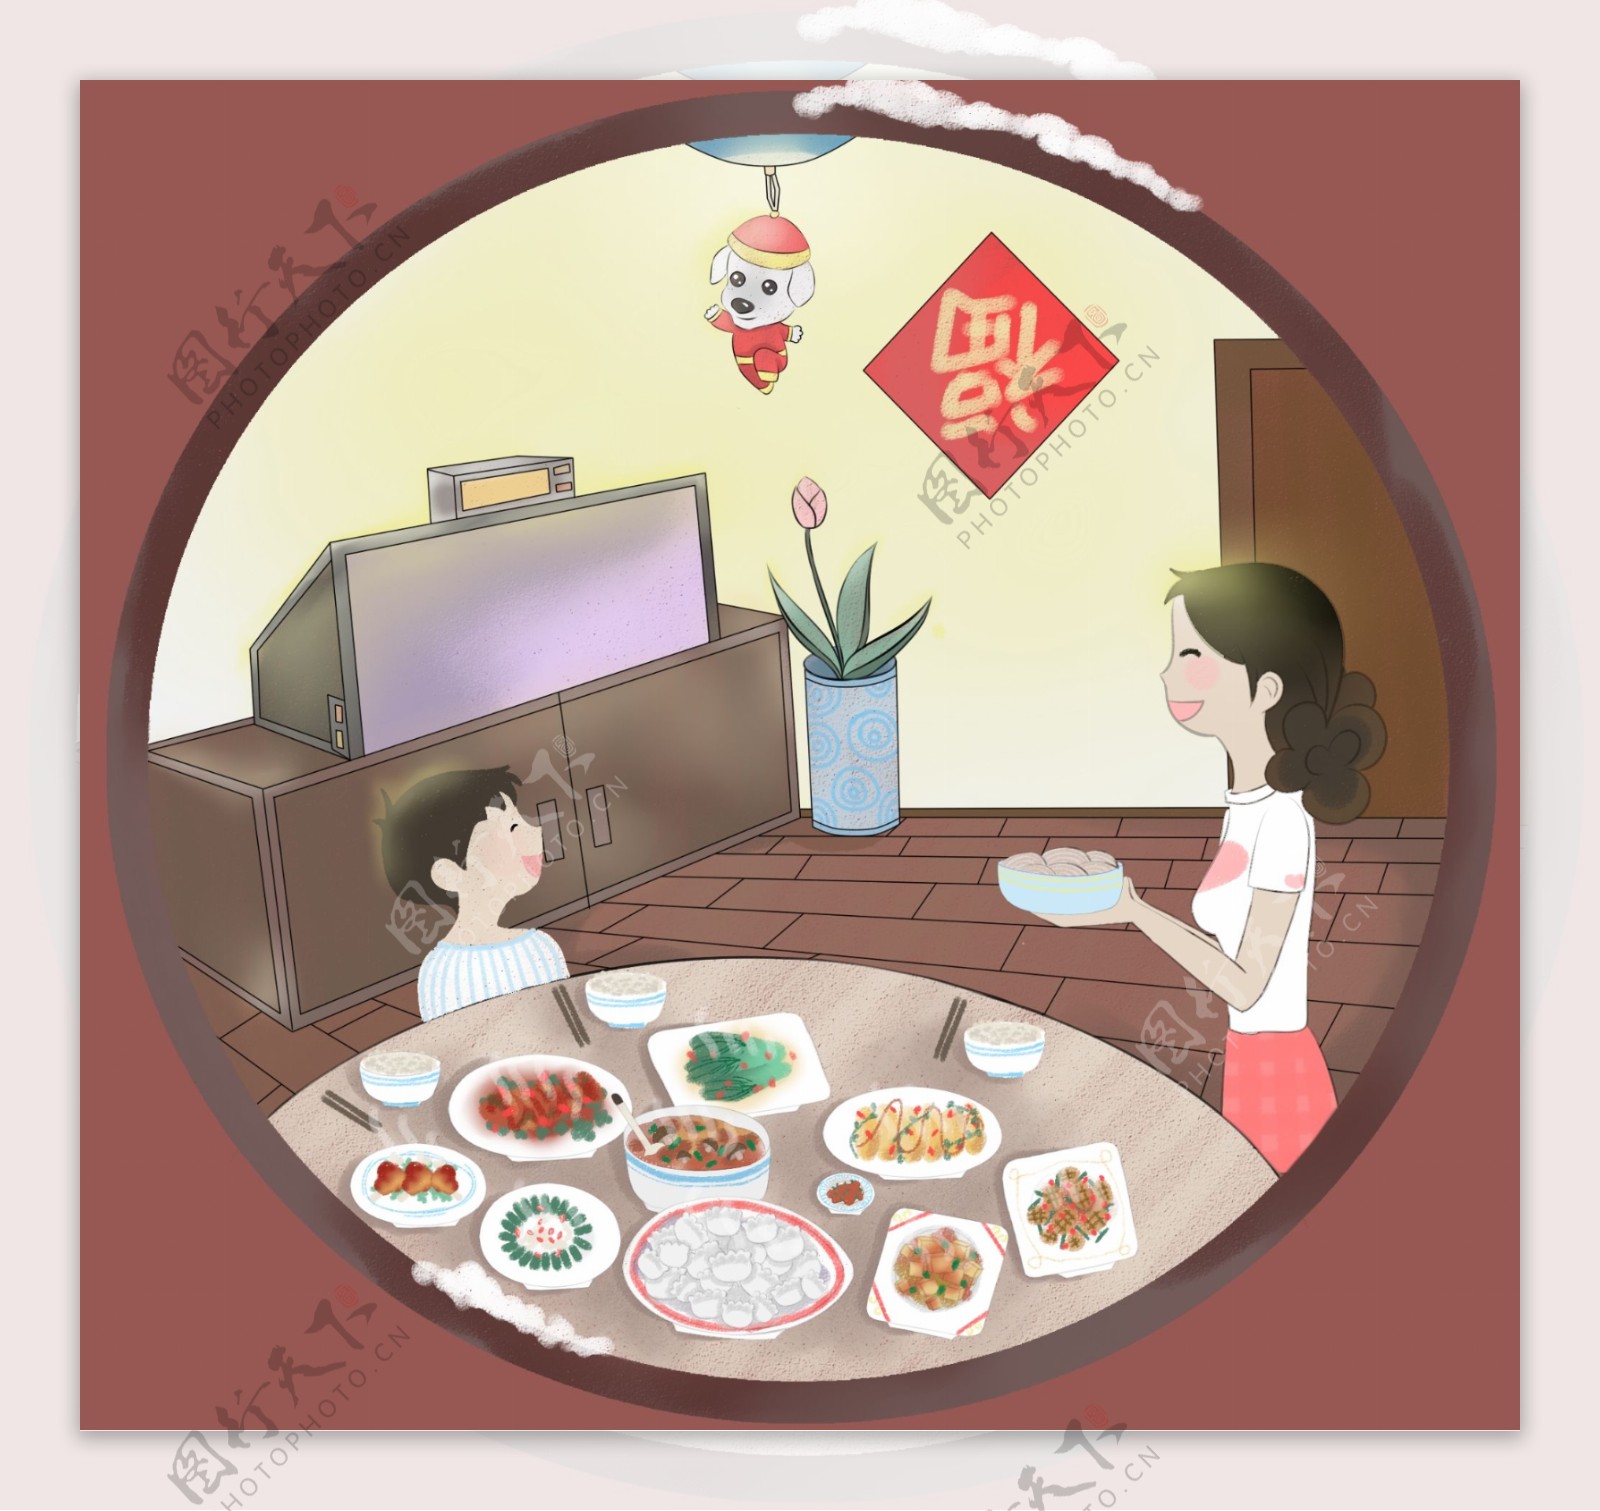 手绘卡通全家吃年夜饭冬至饺子